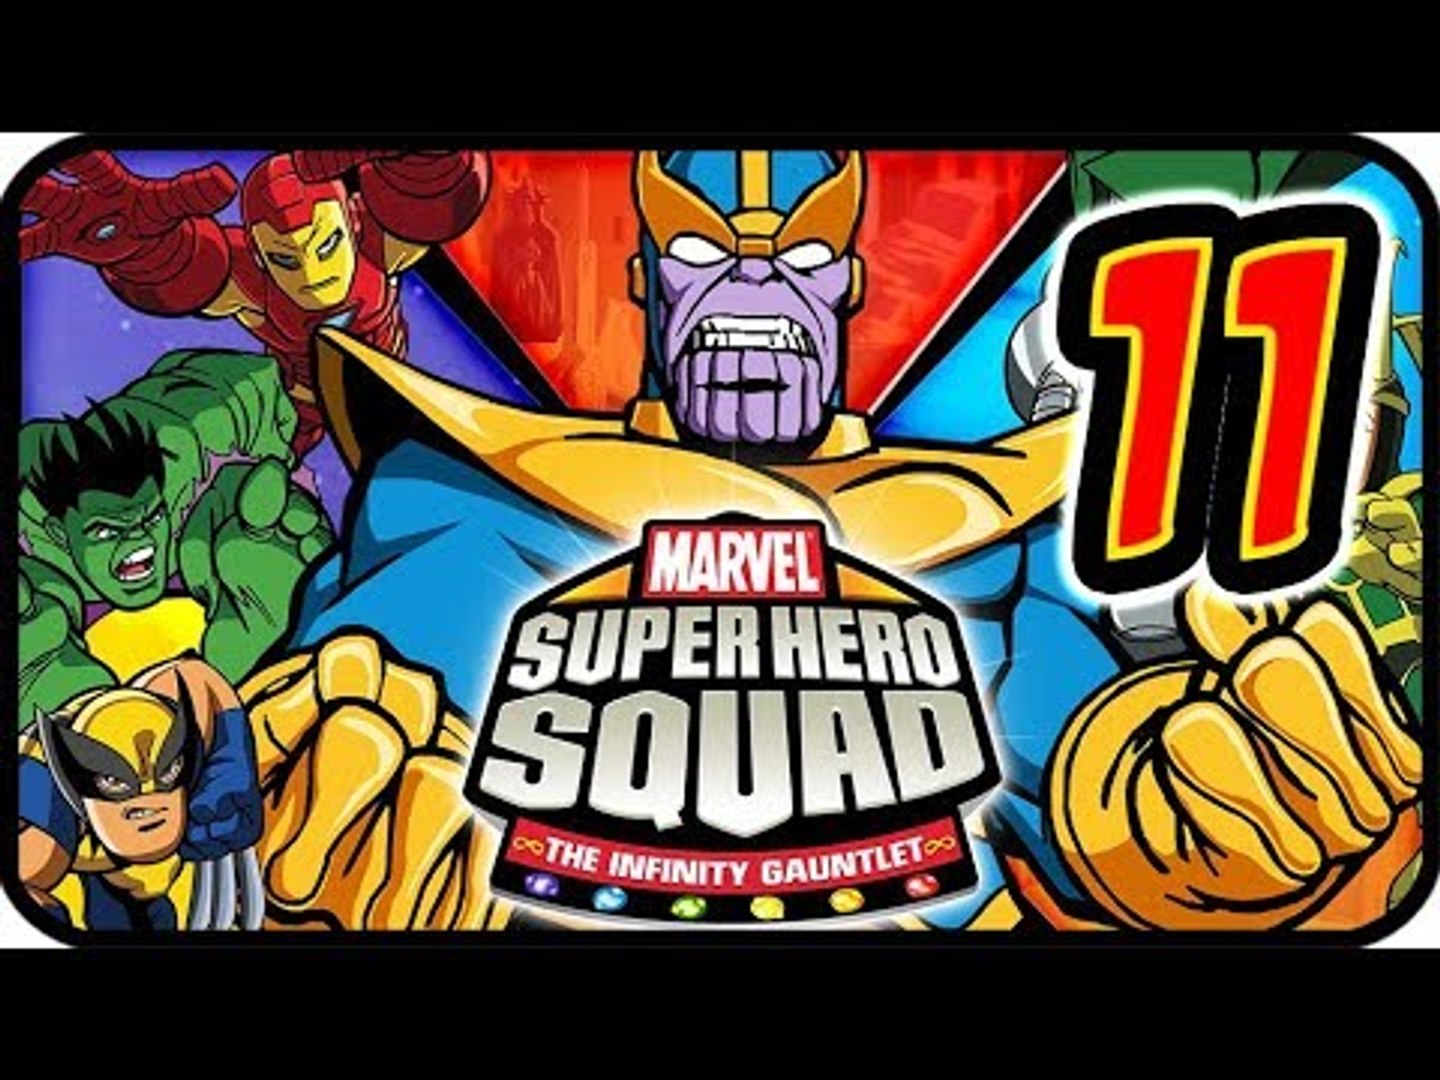 Marvel Super Hero Squad : Le Gant de l'infini en vidéo sur Dailymotion